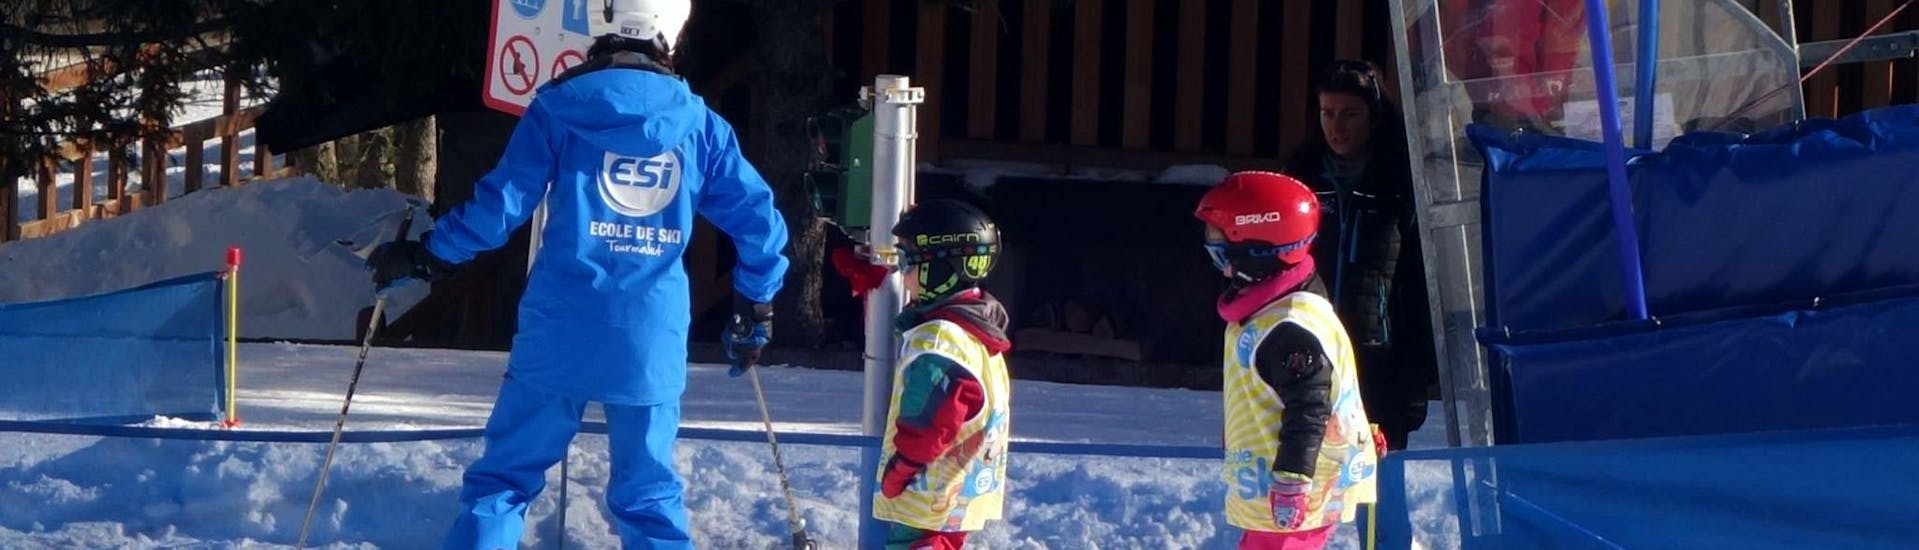 Los jóvenes esquiadores siguen a su monitor de esquí de la escuela de esquí ESI du Tourmalet en La Mongie durante sus clases de esquí para niños "Club Mont et Souris" (3-4 años) en el ambiente seguro del jardín de nieve.